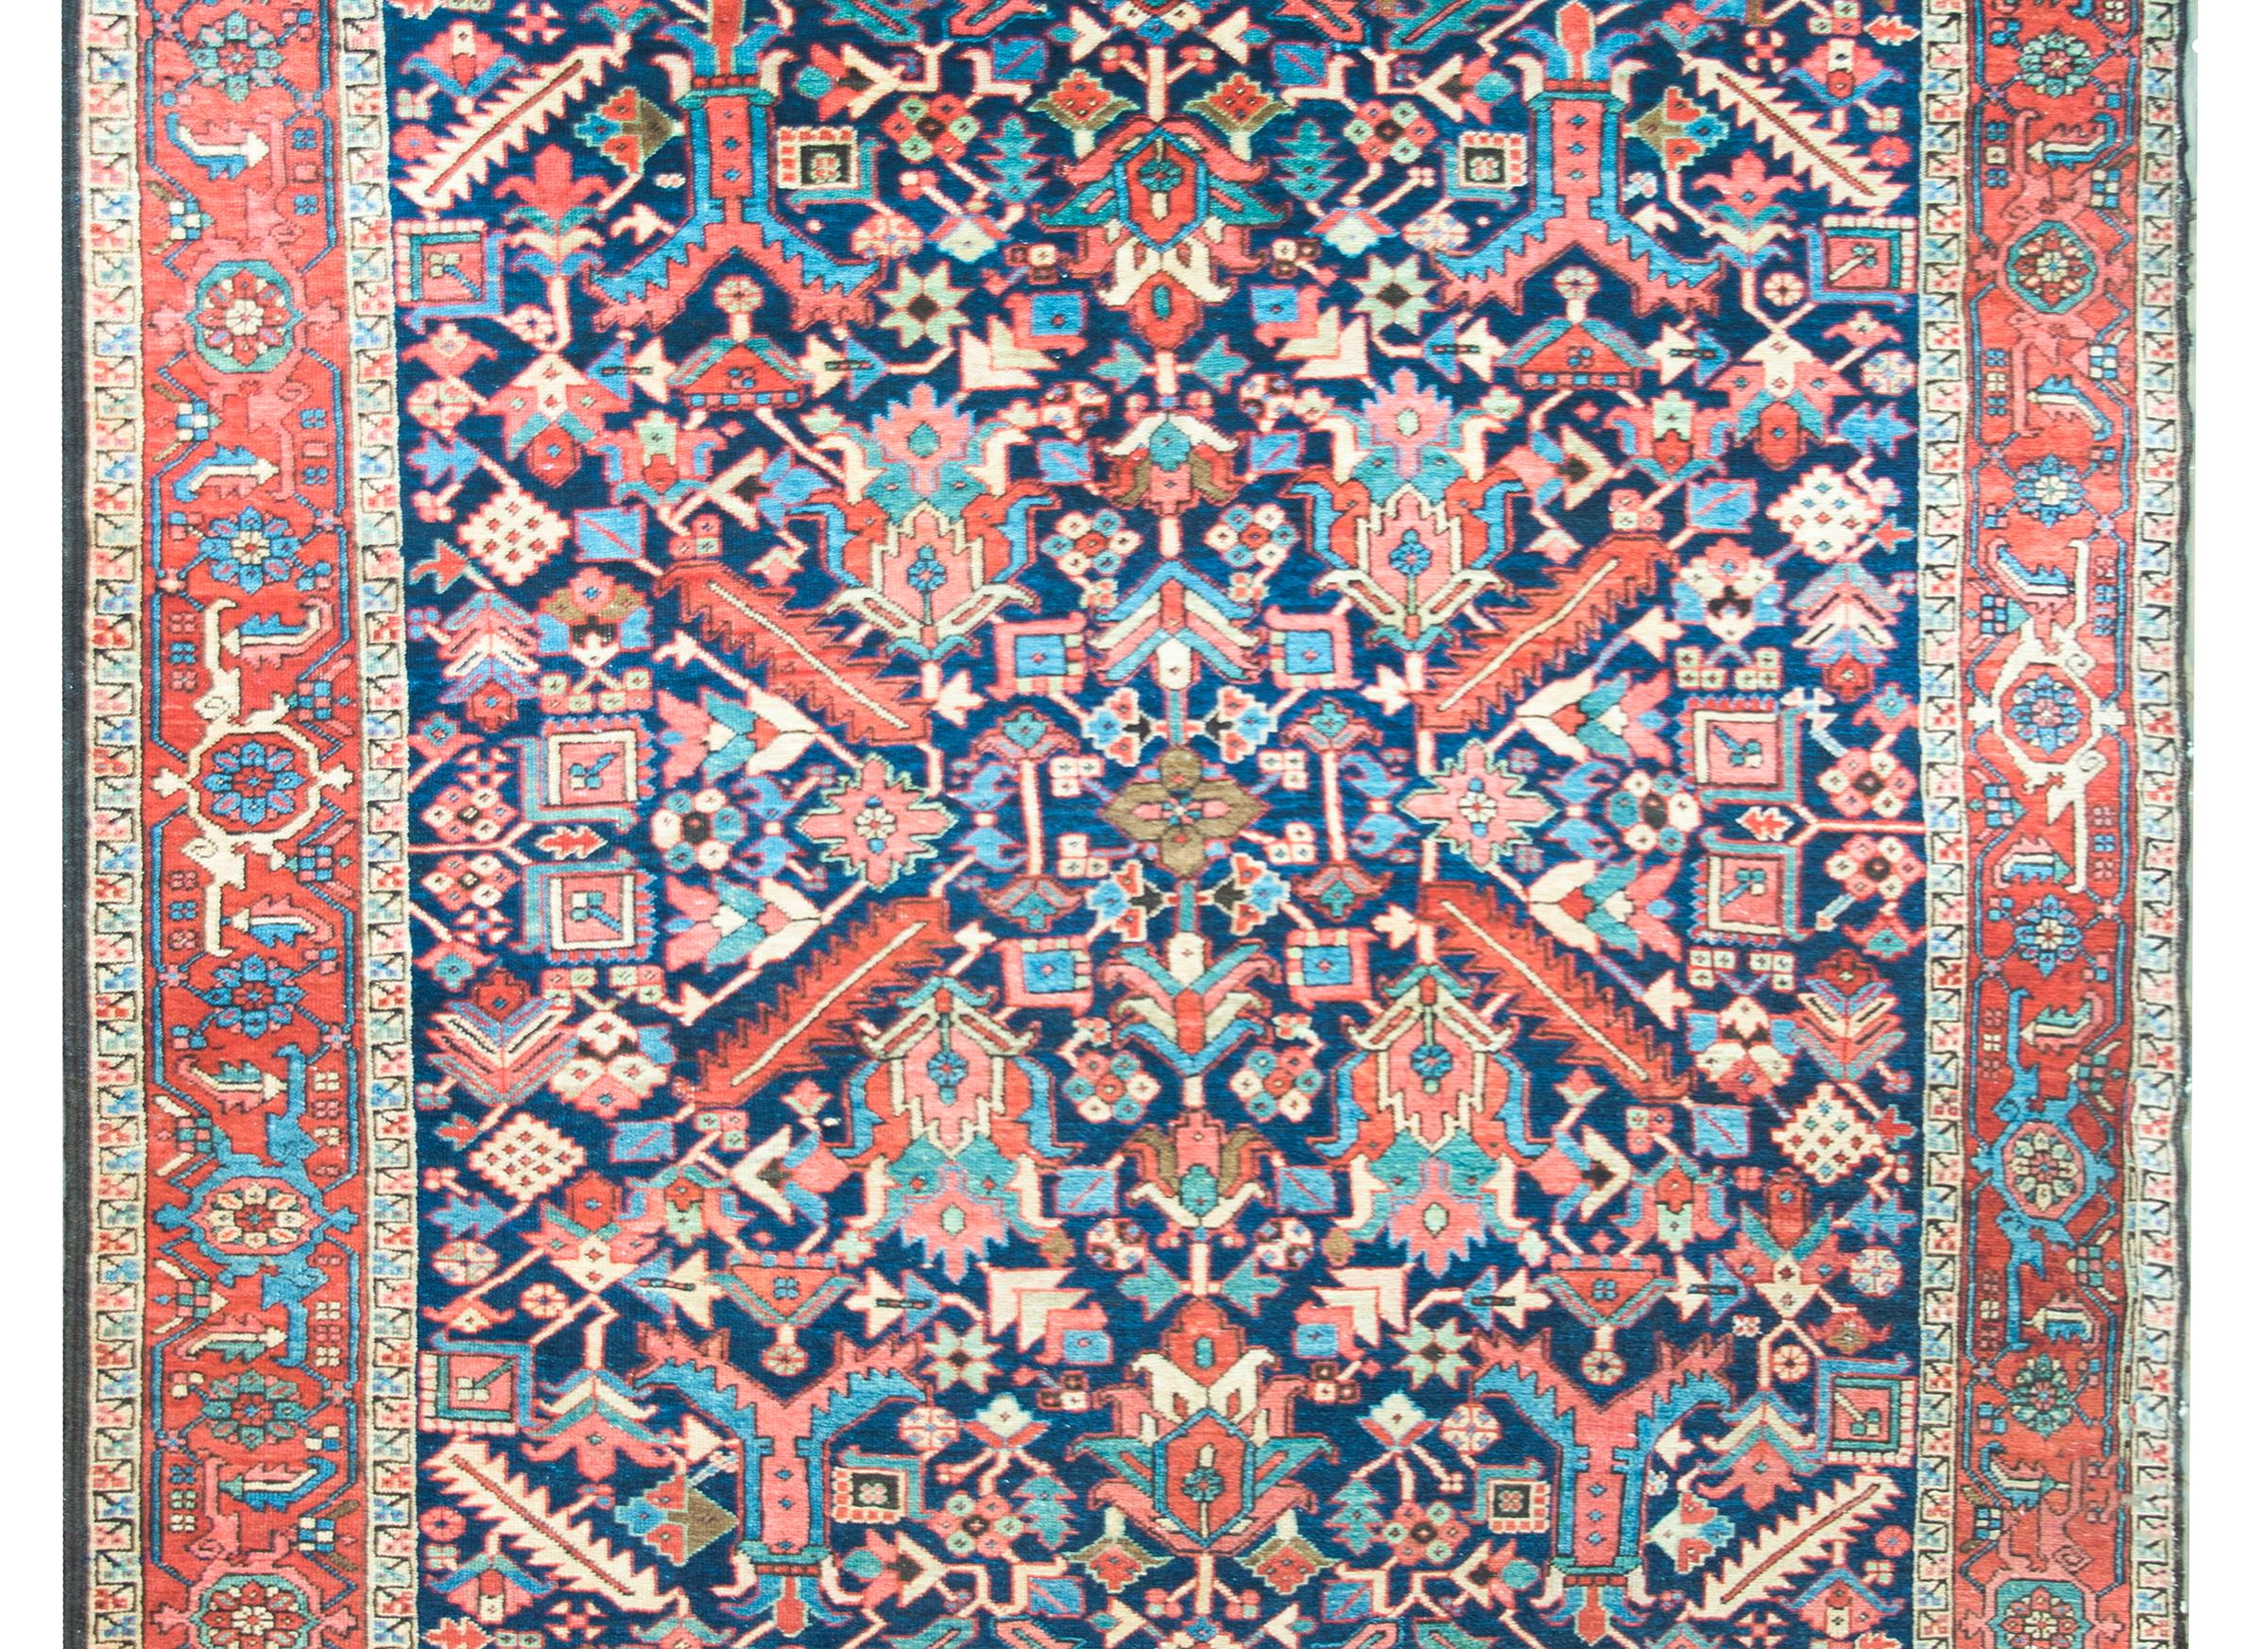 Incroyable tapis persan Heriz du début du 20e siècle, avec un motif floral dense et miroitant sur tout le pourtour, avec des fleurs et des feuilles à grande échelle, et une myriade de fleurs stylisées, le tout tissé en rose, turquoise, crème et